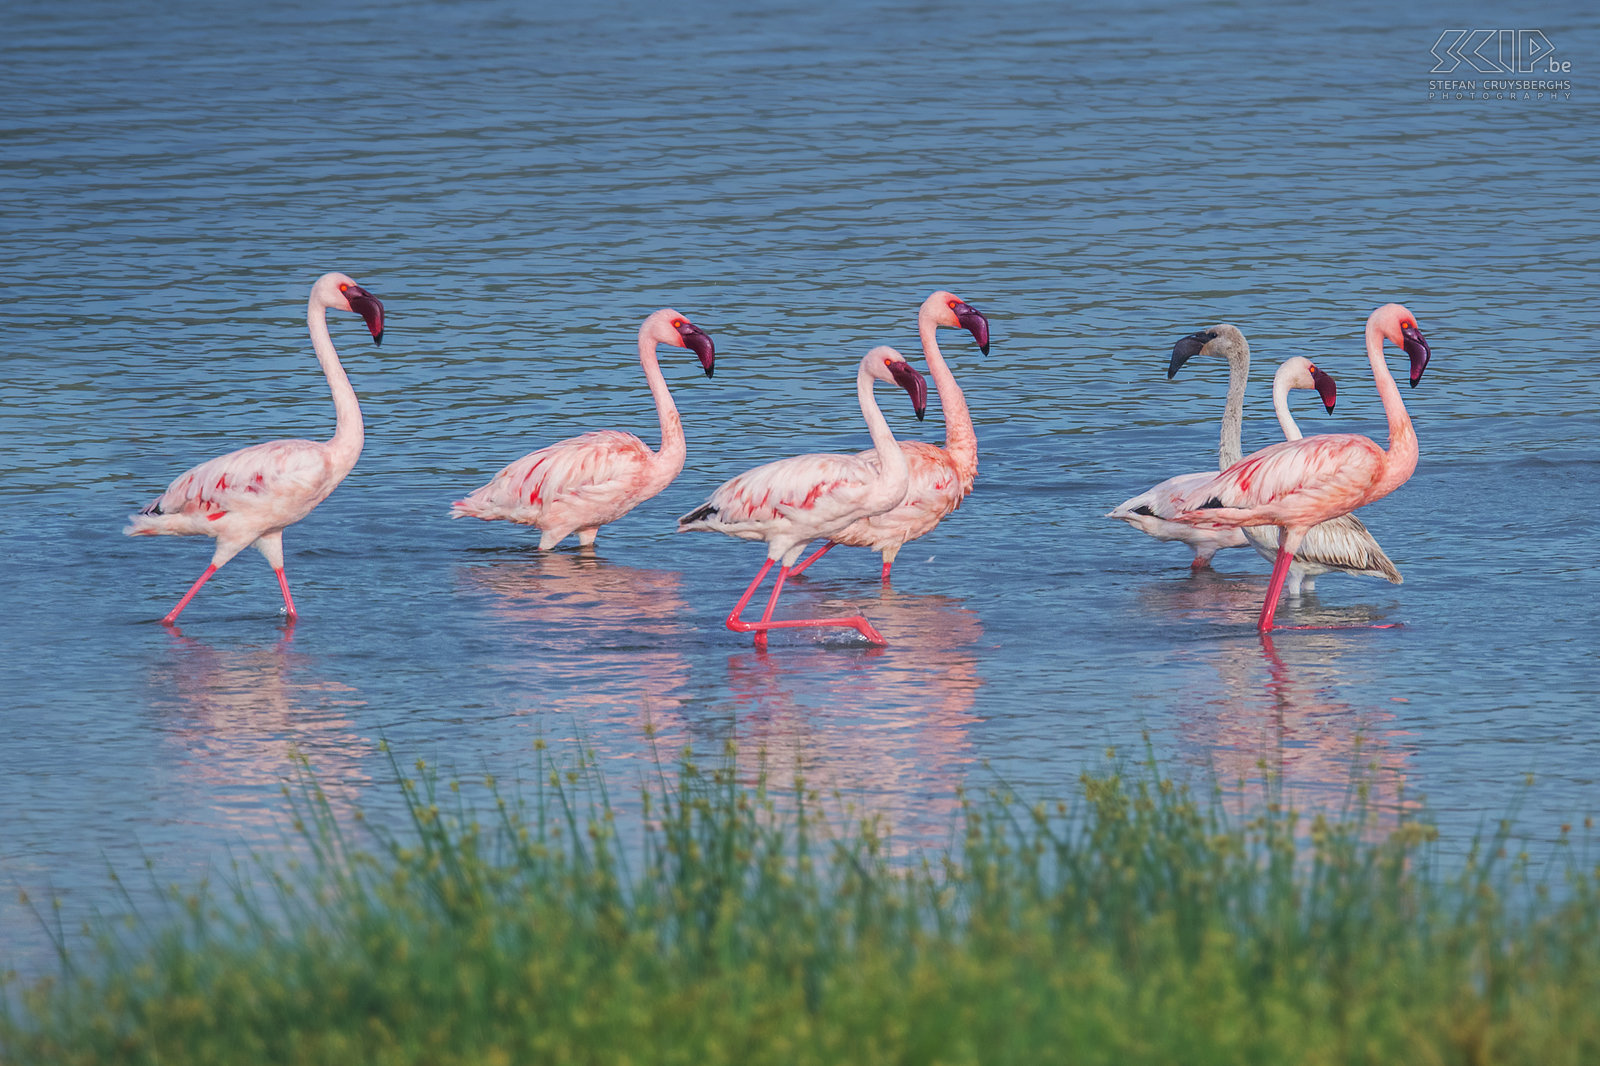 Lake Chitu - Flamingo's De gewone flamingo (Greater flamingo, Phoenicopterus roseus) is de grootste flamingo-soort. Het merendeel van het verenkleed is roze-wit maar de vleugeldekveren zijn rood. Jonge vogels hebben een grijze kleur. En ook bij de flamingo's gaan de jongeren soms tegen de stroom in. Stefan Cruysberghs